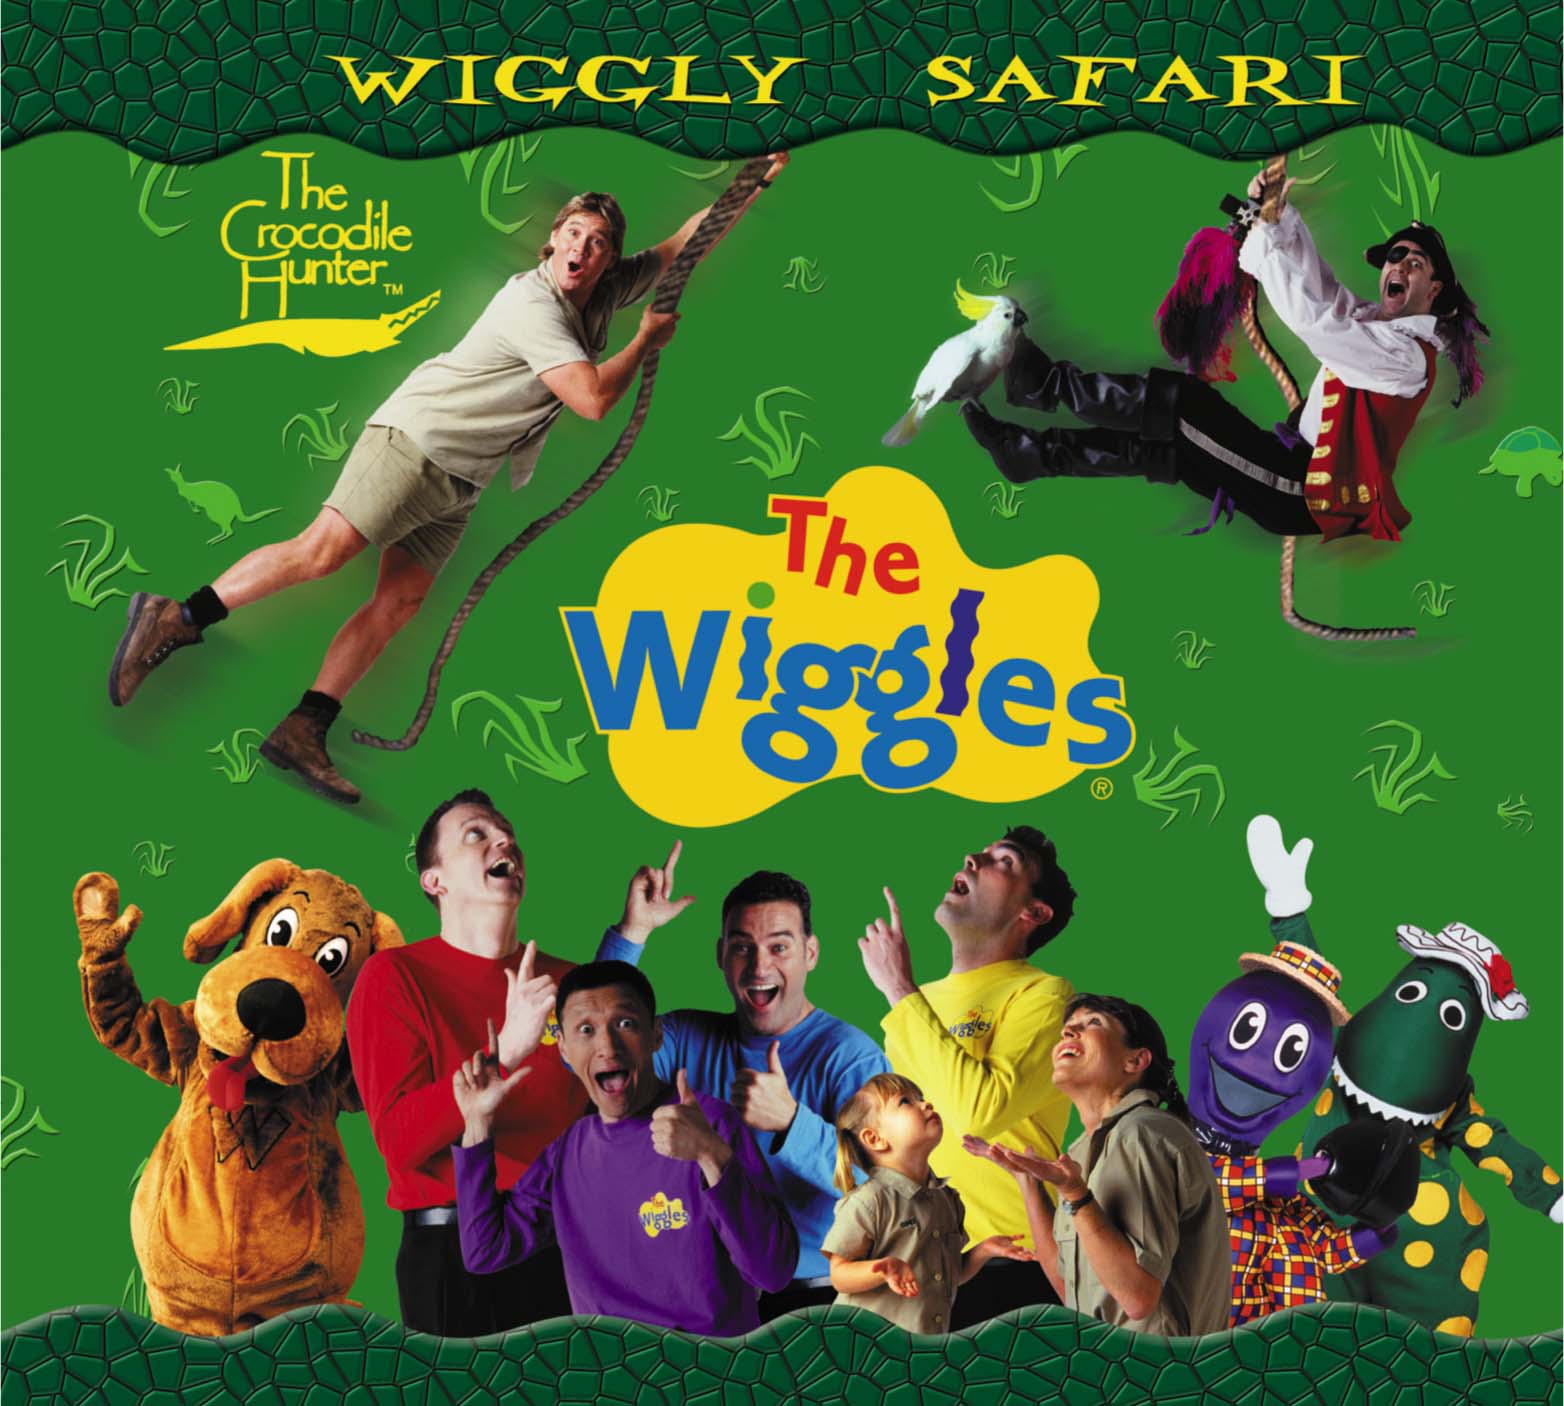 wiggles wiggly safari gallery